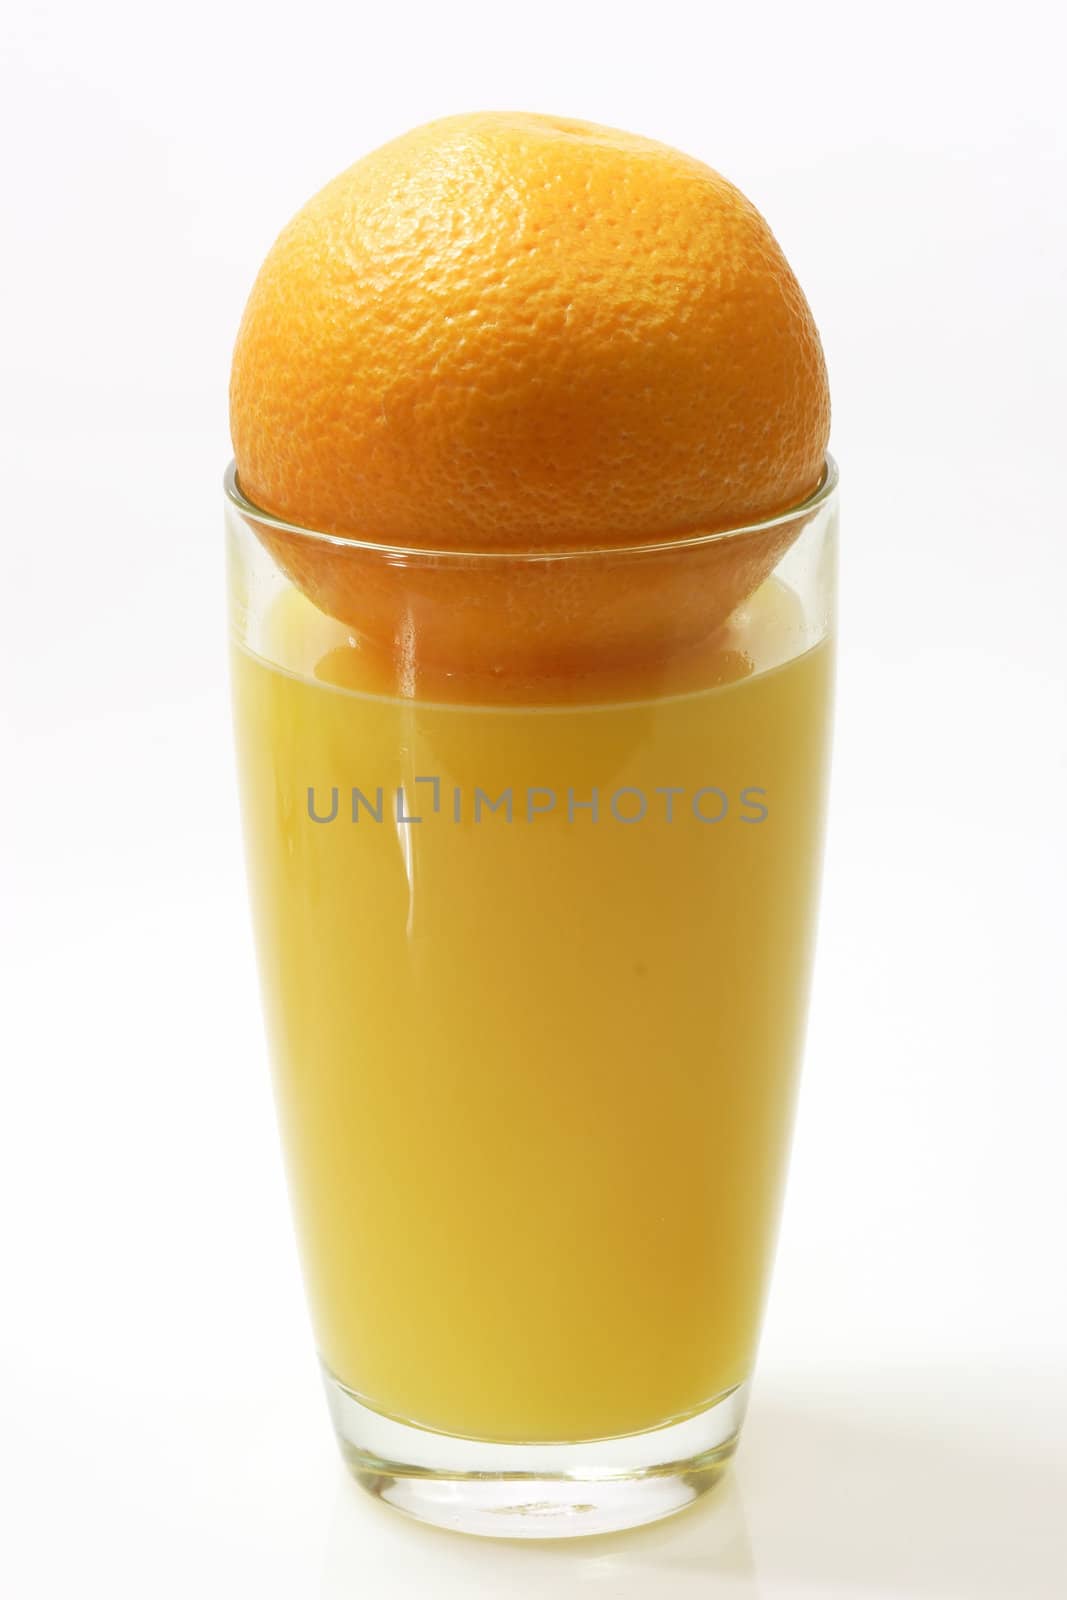 Orange juice by Teamarbeit